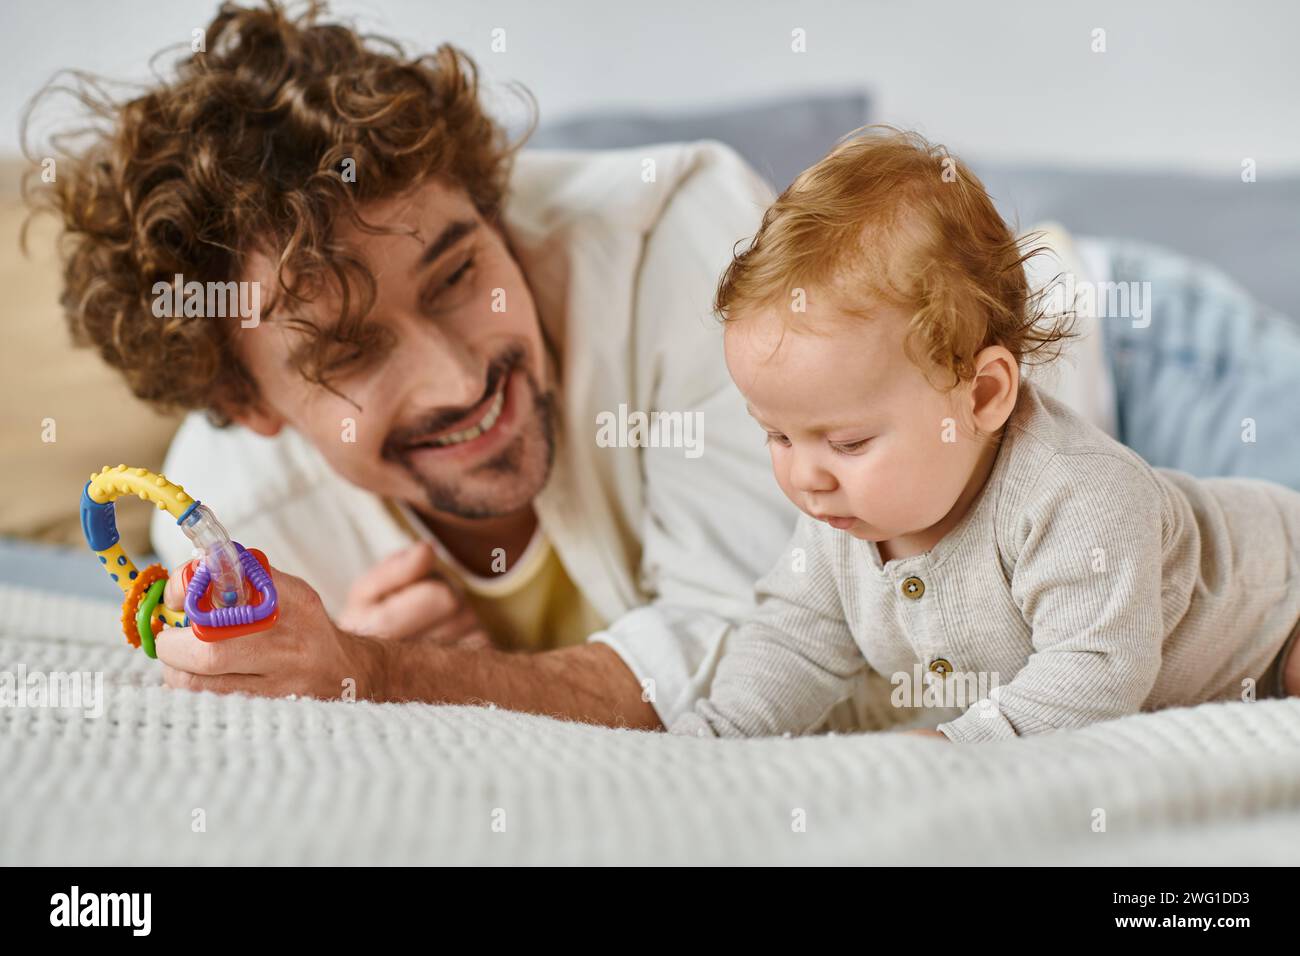 Alleinerziehender Vater, der eine bunte Rassel in der Nähe des kleinen Jungen im Schlafzimmer hält, Band zwischen Vater und Sohn Stockfoto